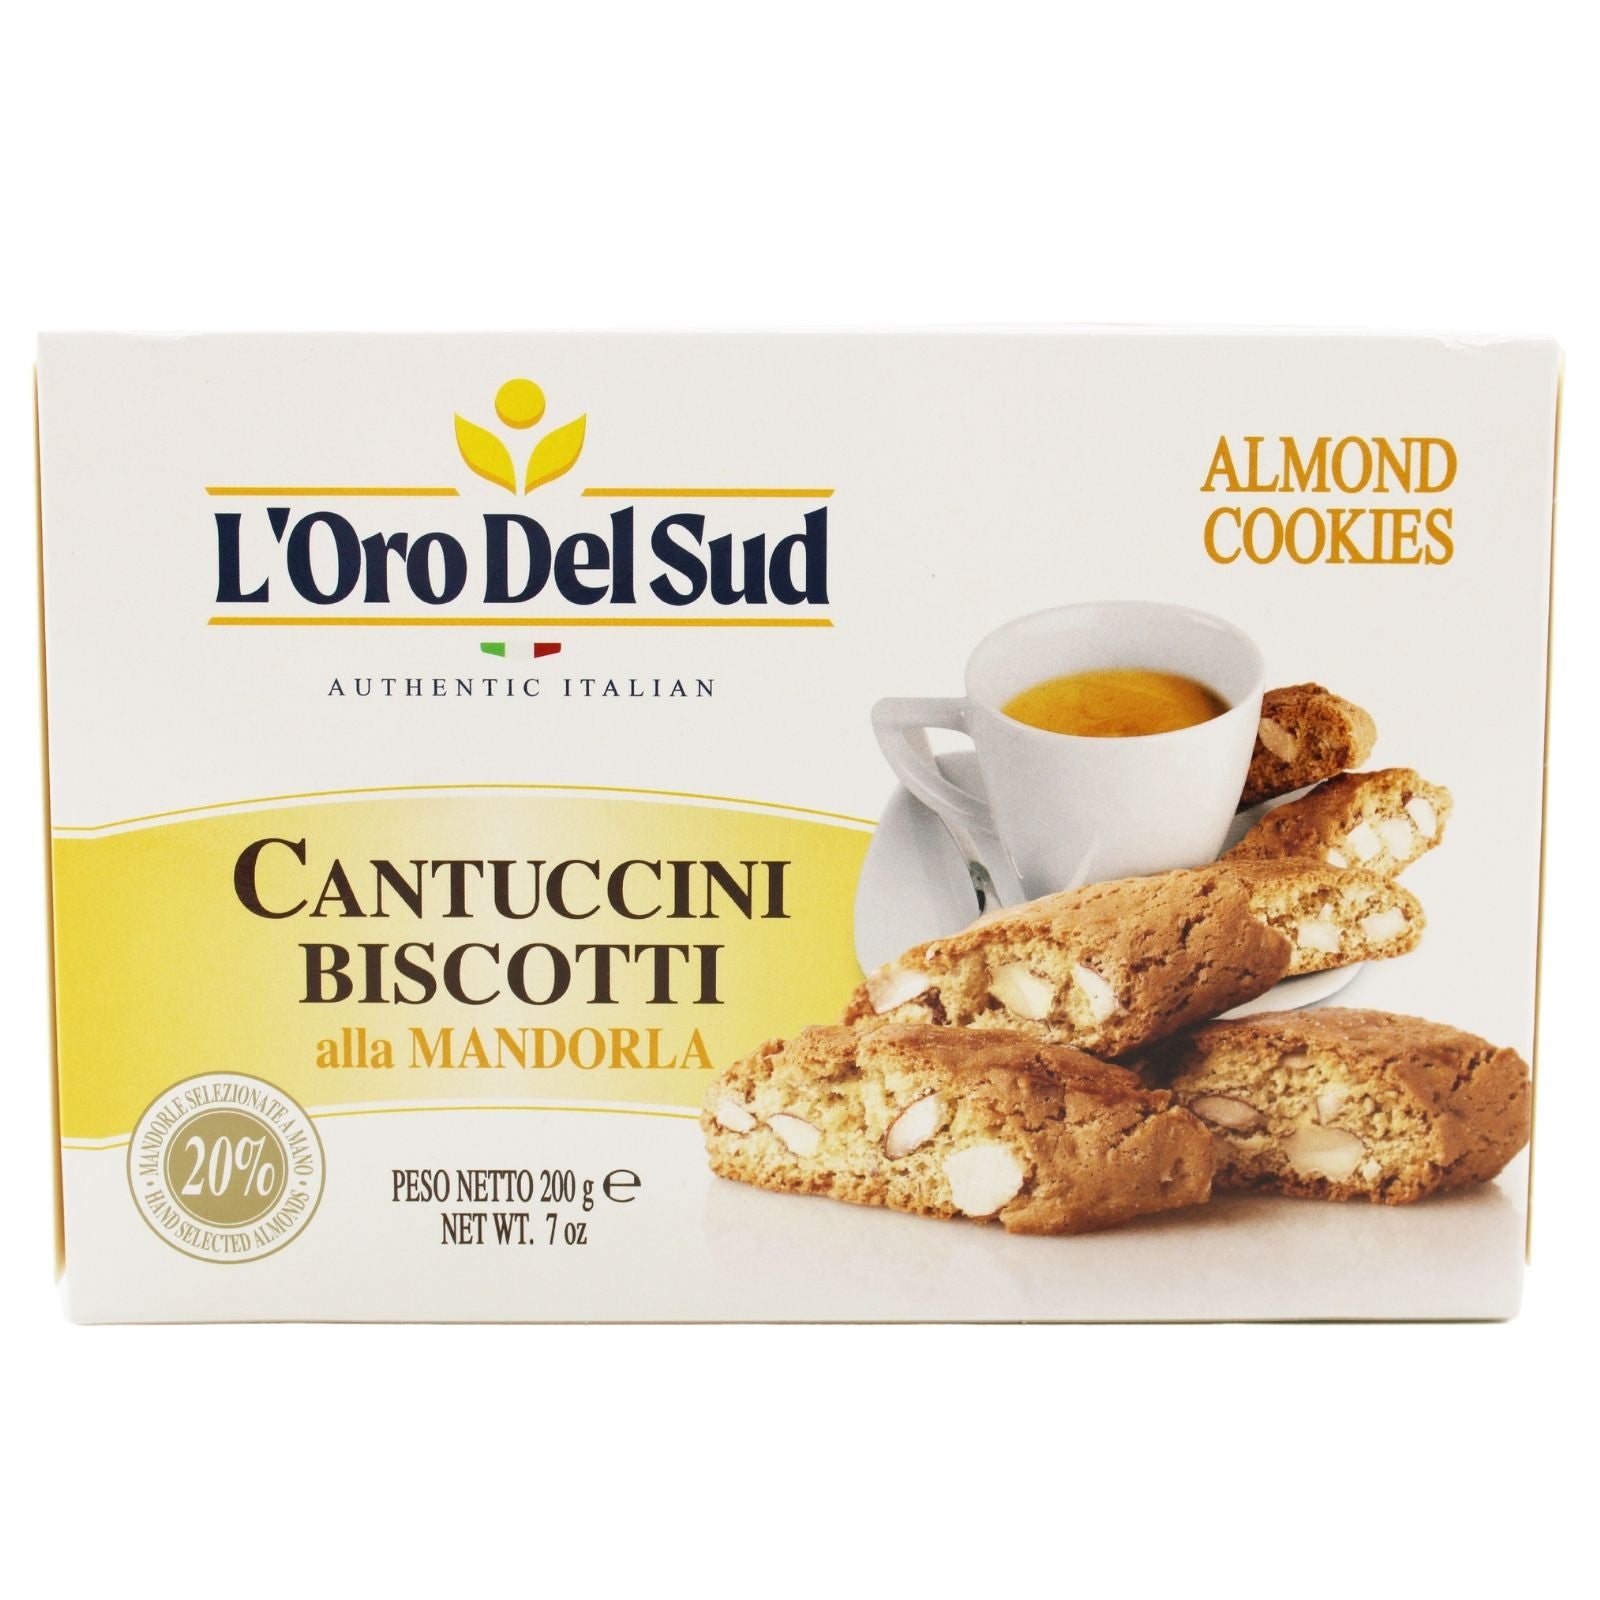 L'Oro Del Sud Cantuccini Biscotti with Almonds